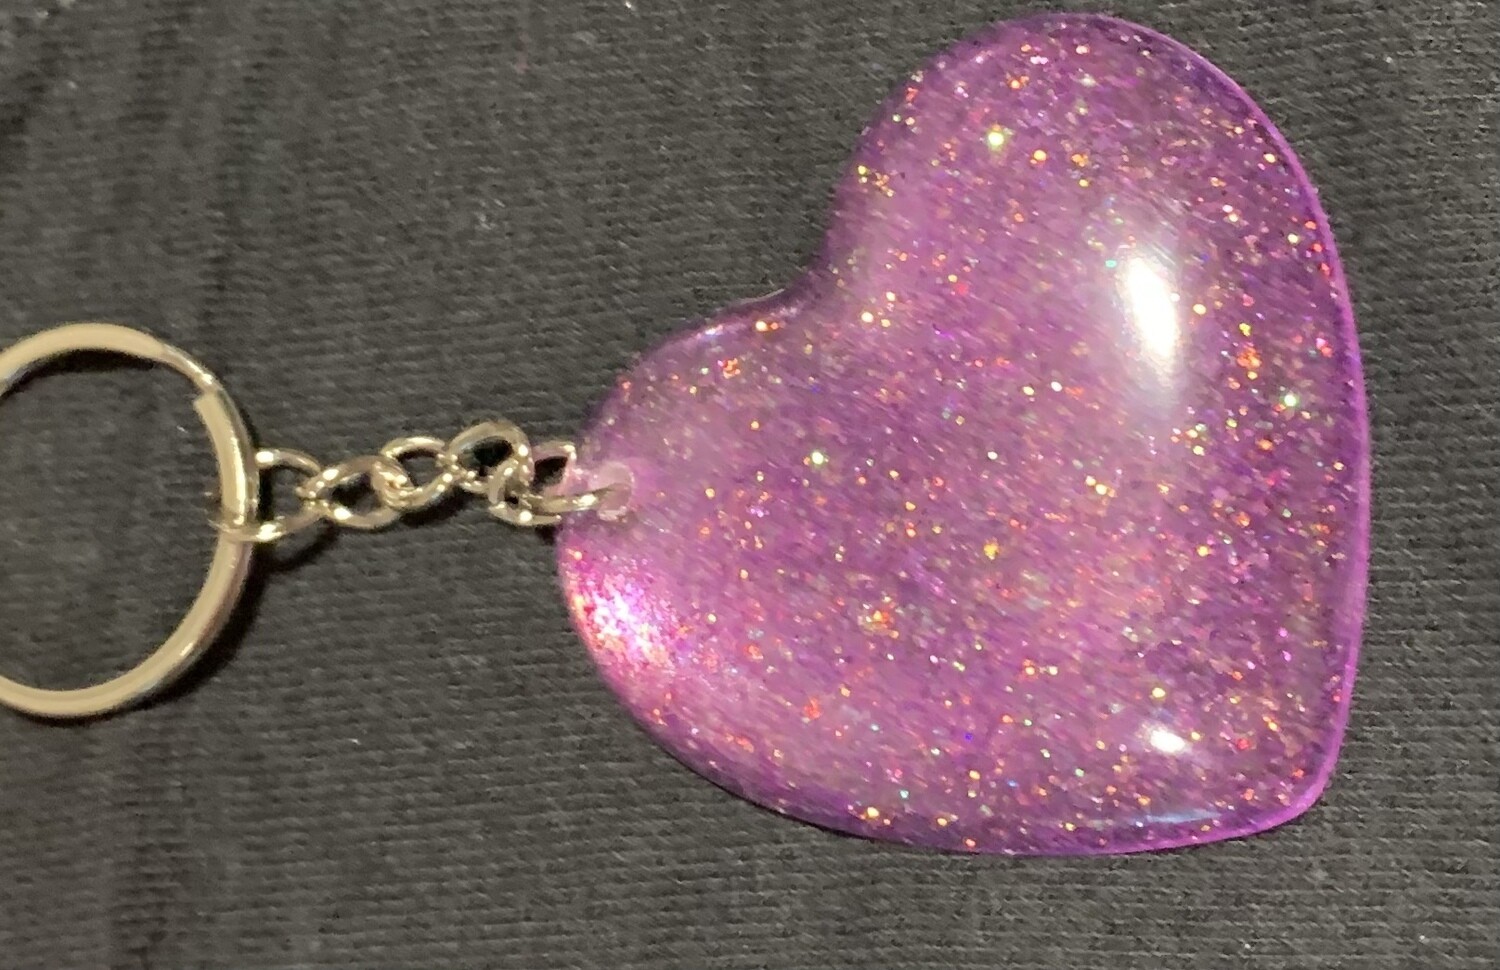 Glitter Heart Keychain